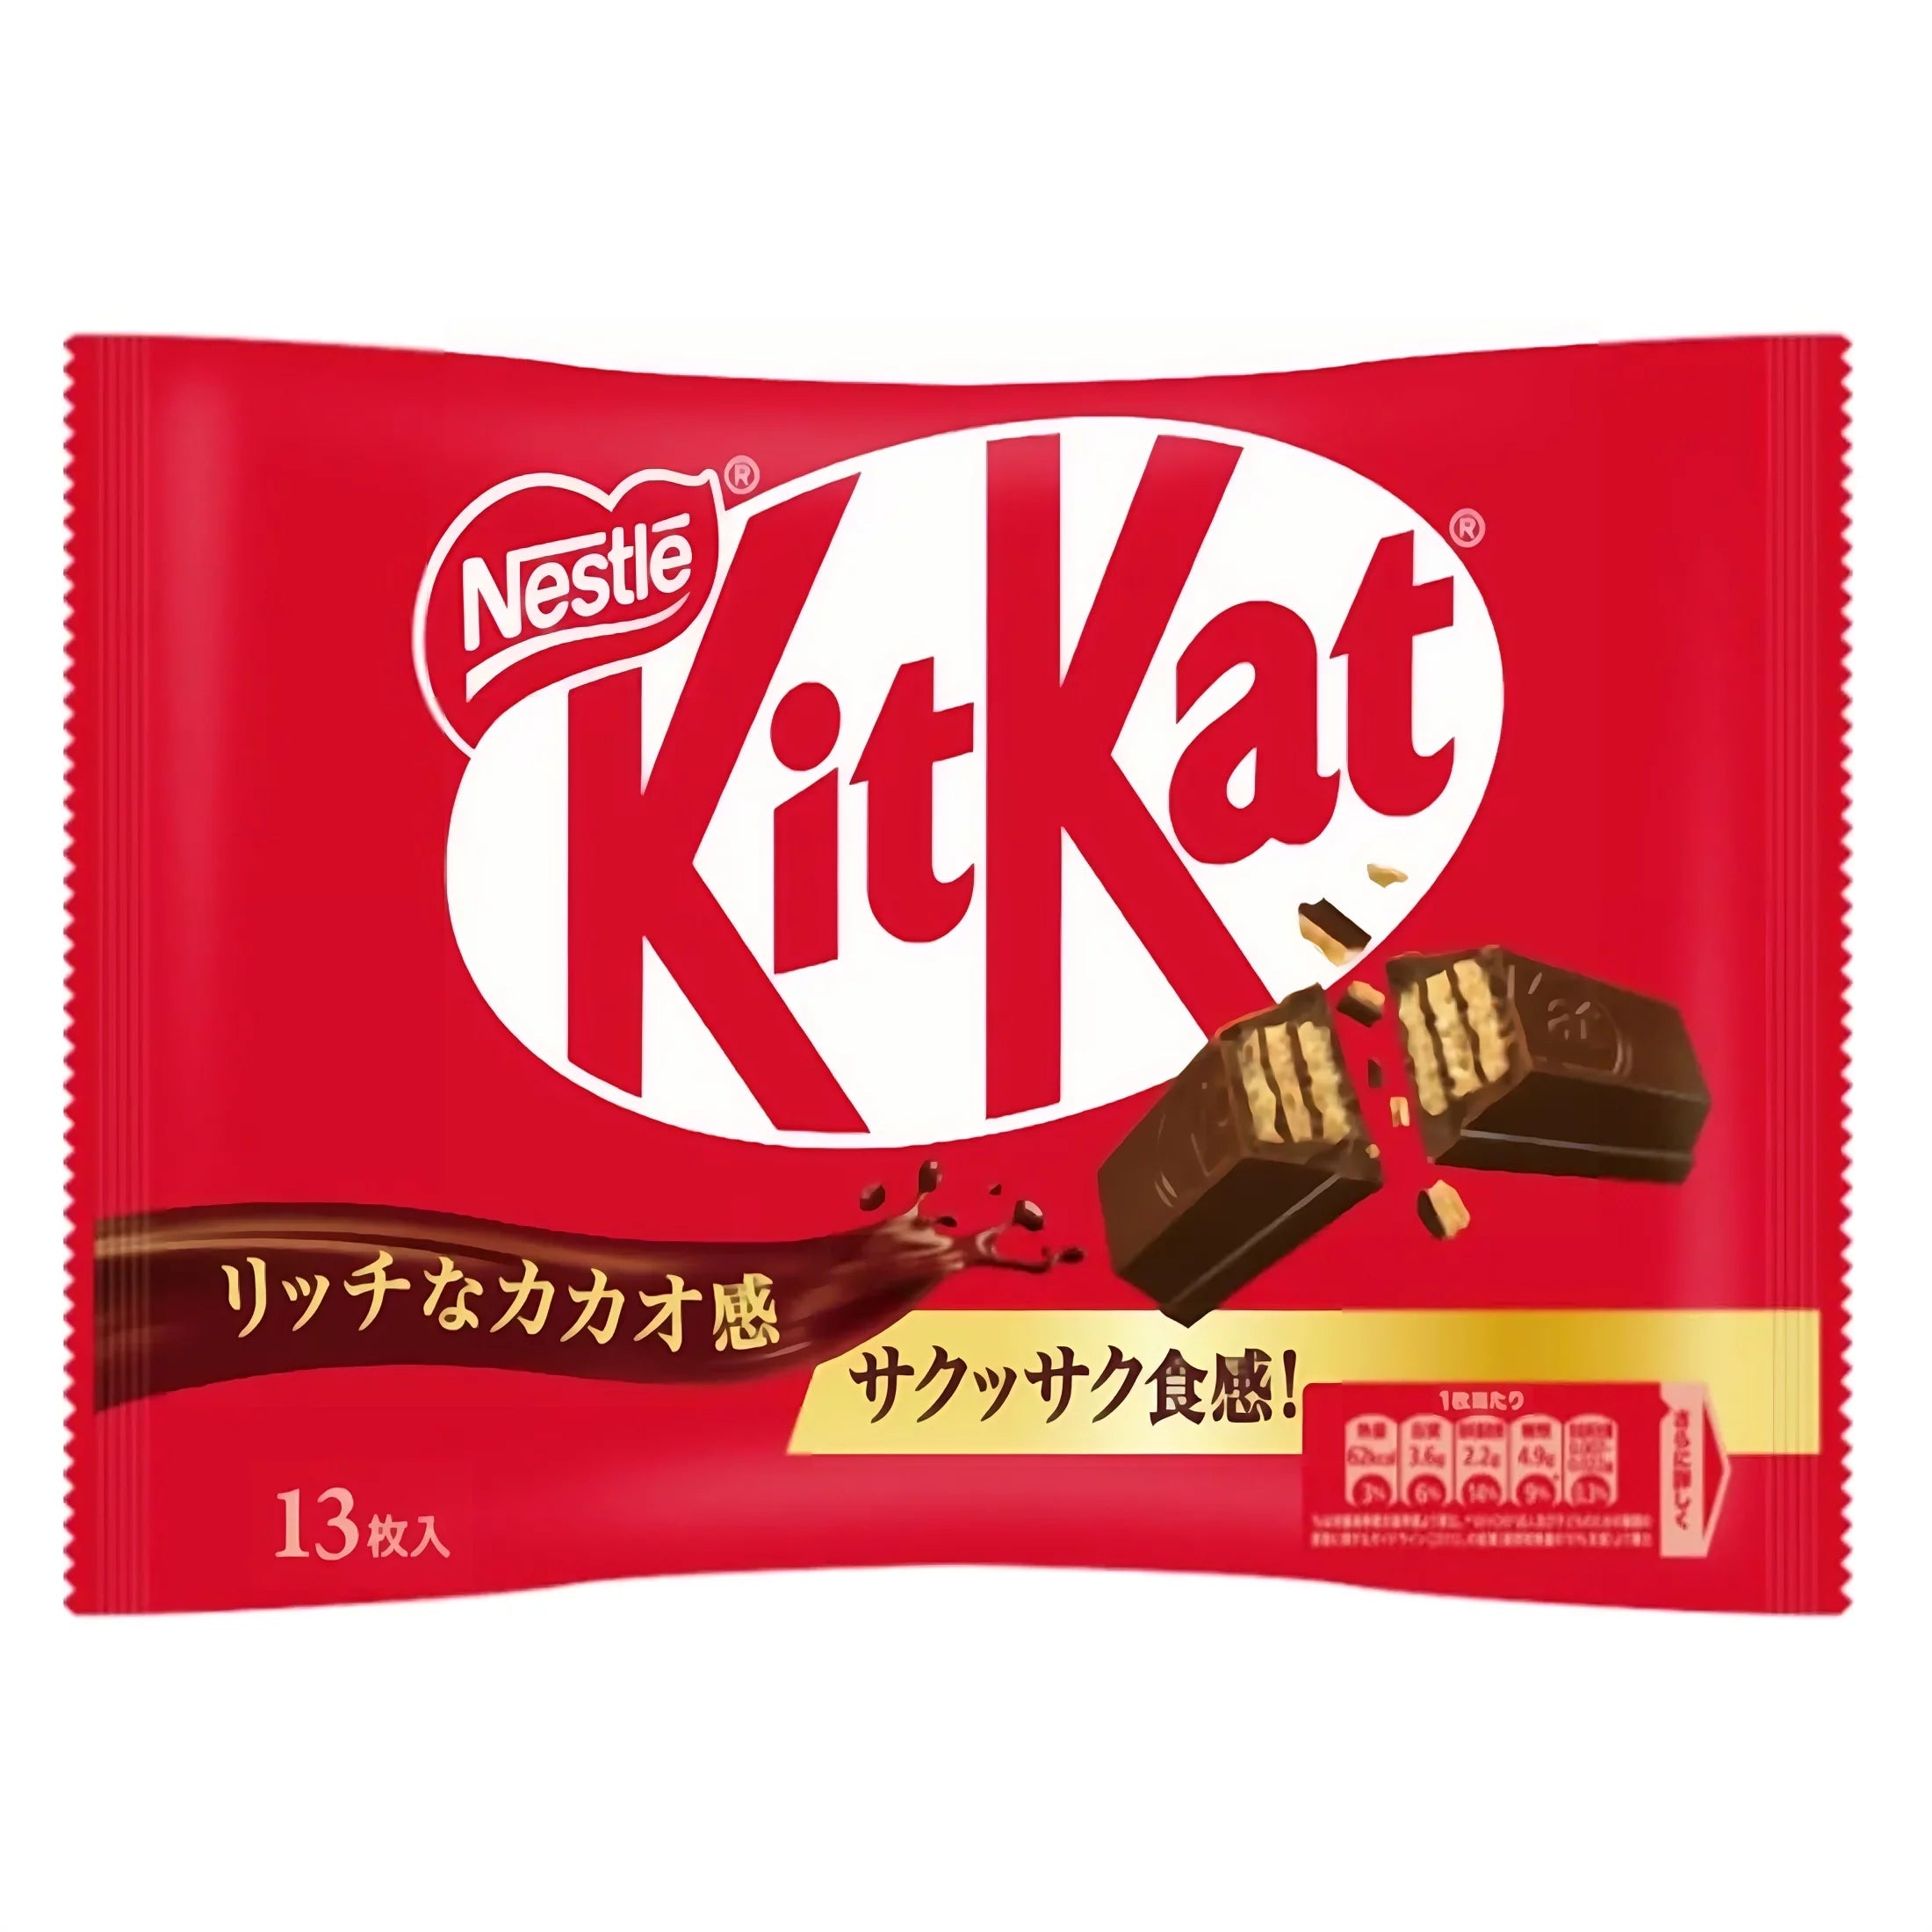 KitKat Milk Chocolate Japan